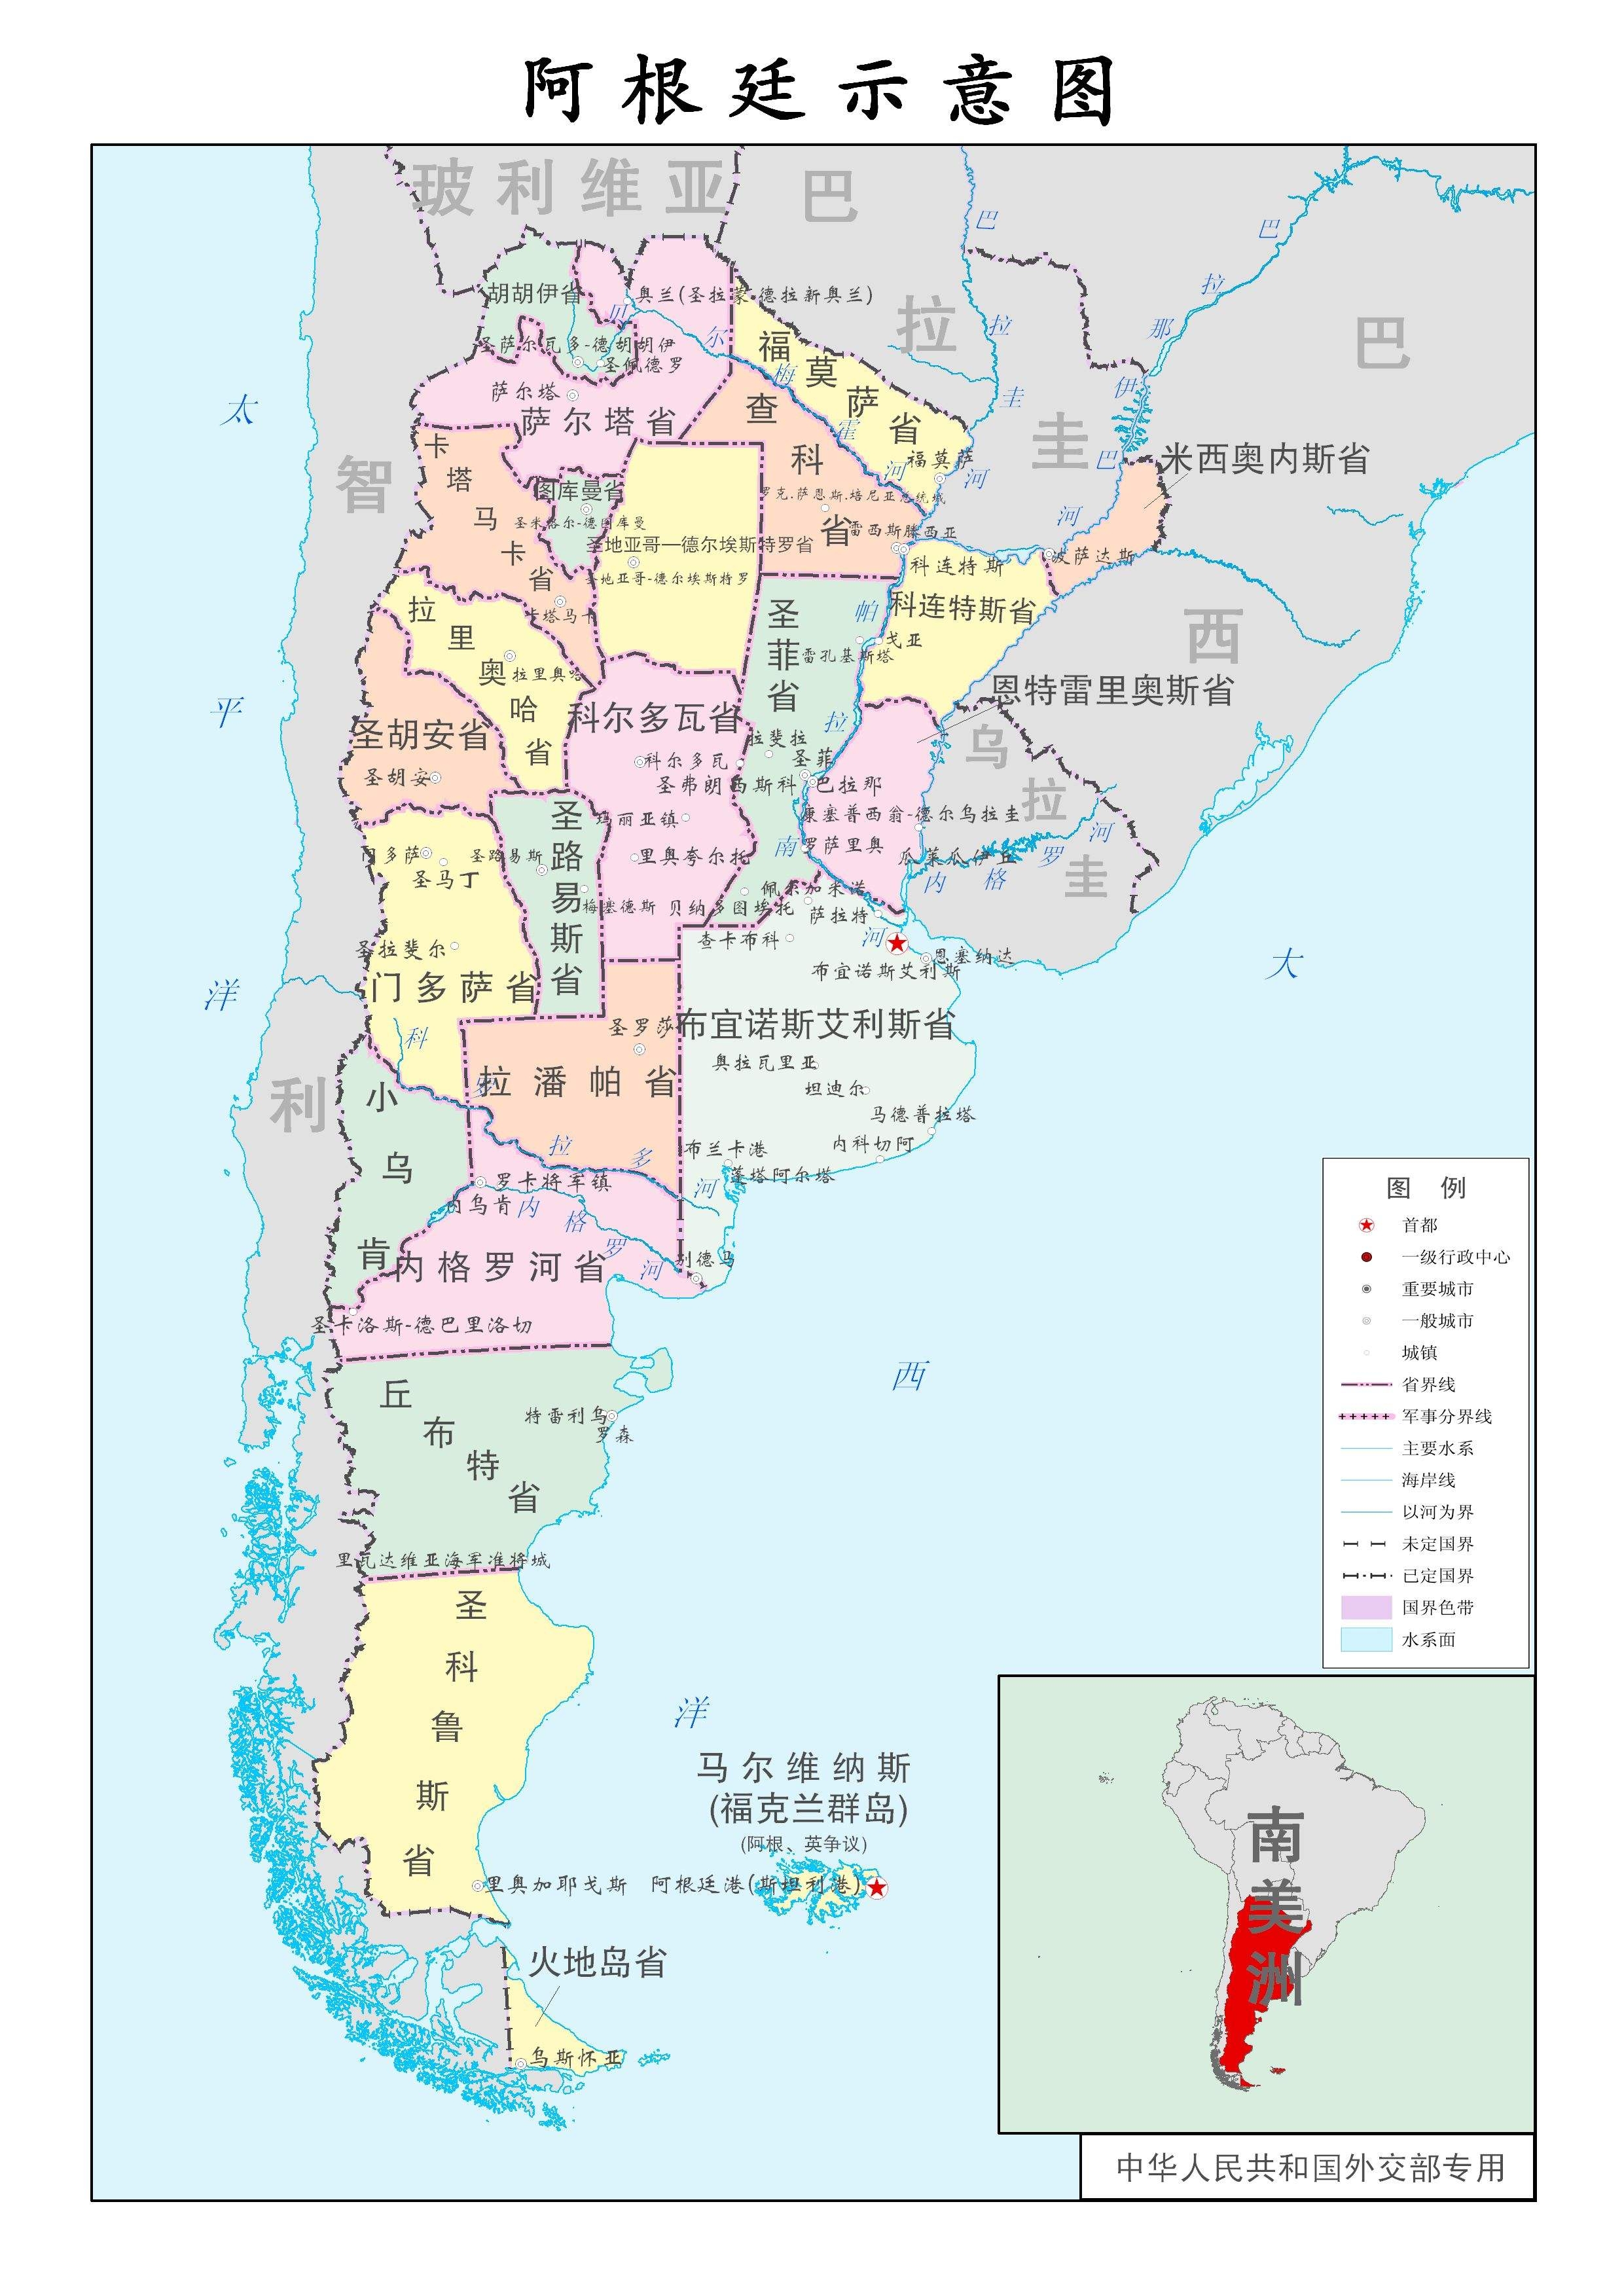 阿根廷的地理位置图片